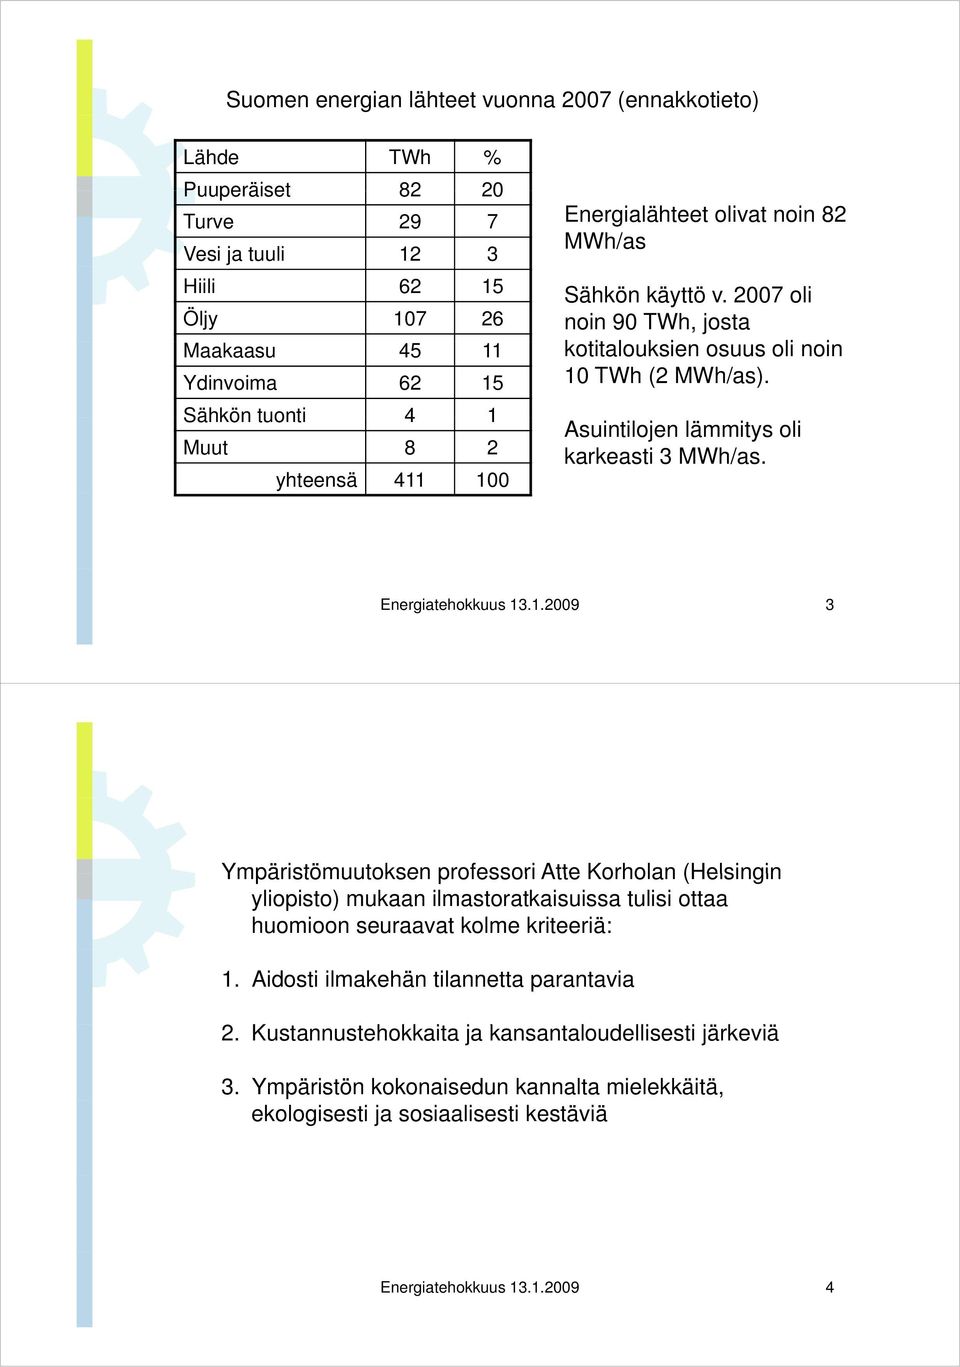 Energiatehokkuus 13.1.2009 3 Ympäristömuutoksen professori Atte Korholan (Helsingin yliopisto) mukaan ilmastoratkaisuissa tulisi ottaa huomioon seuraavat kolme kriteeriä: 1.